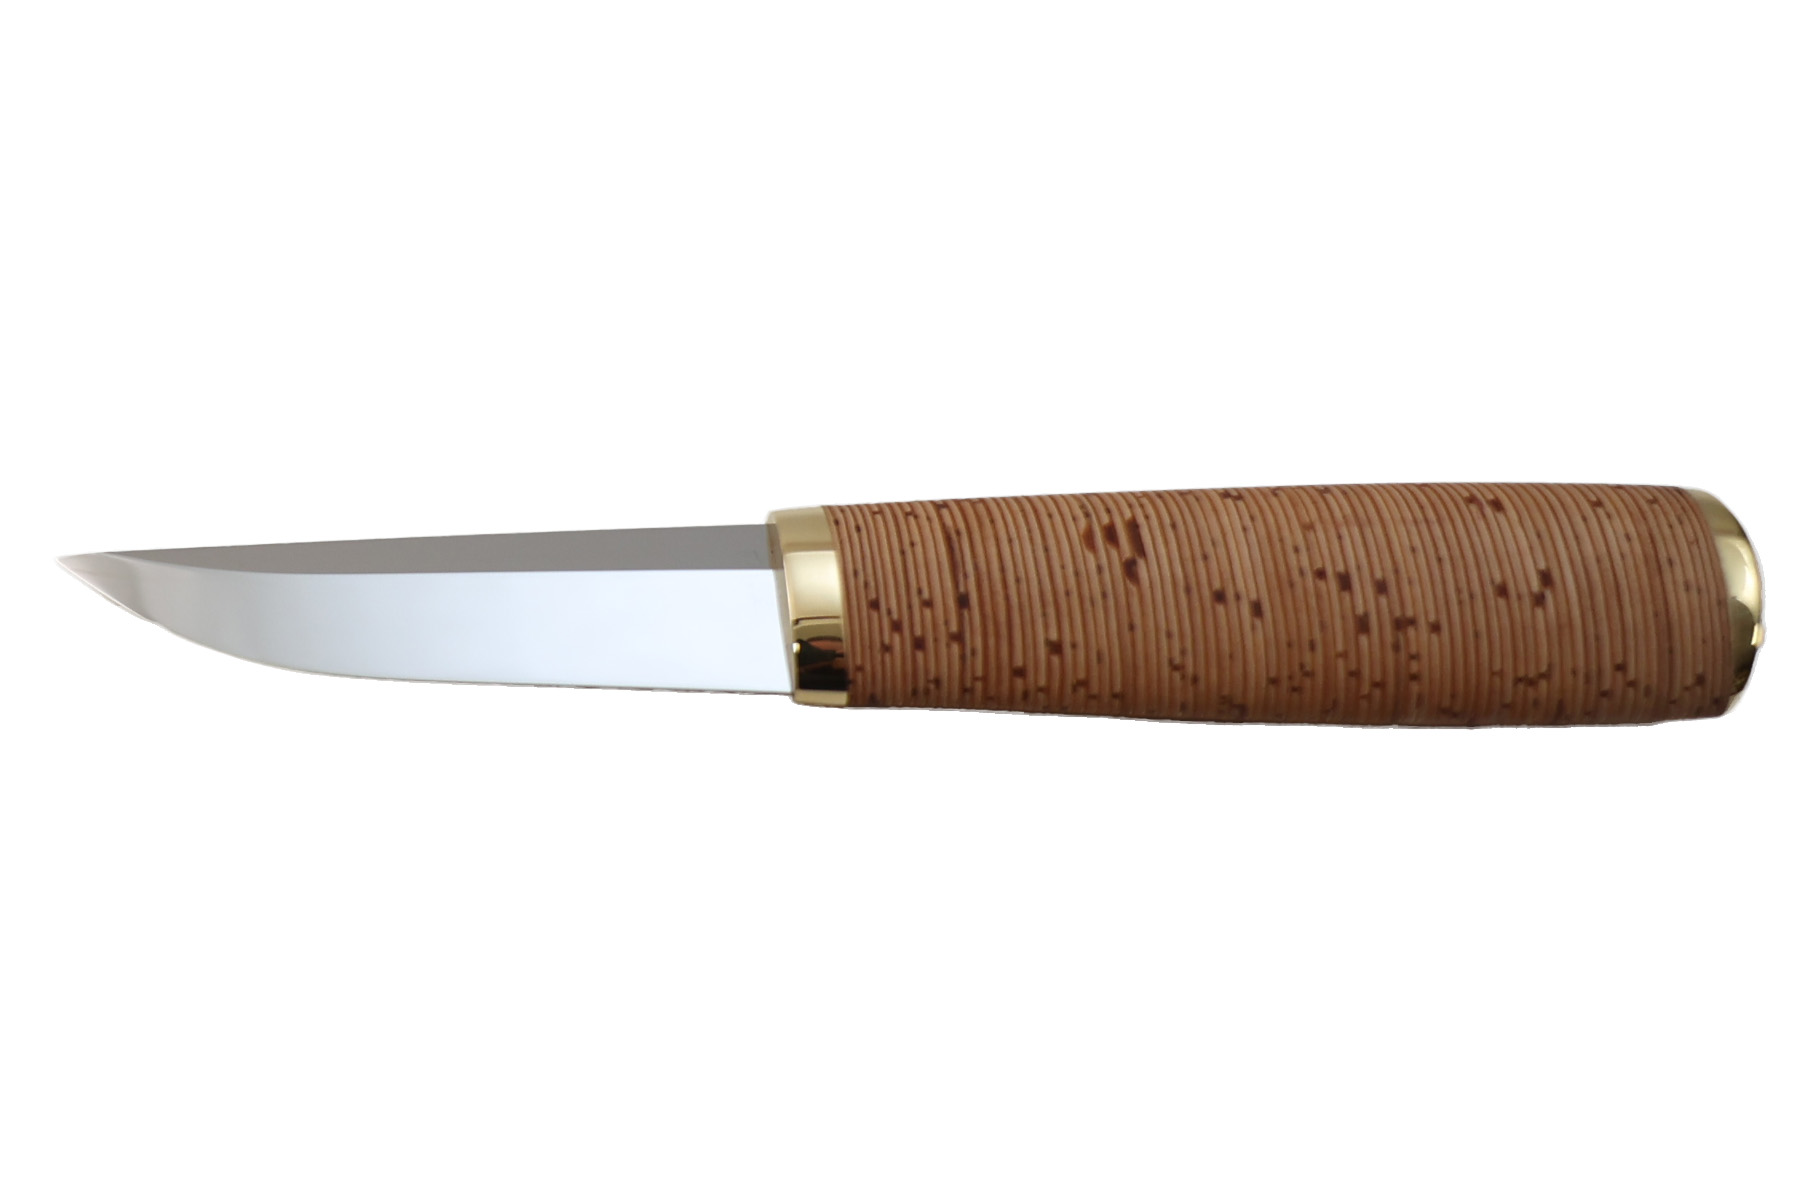 Couteau fixe nordique Artisanal de Pekka Tuominen écorces de bouleau